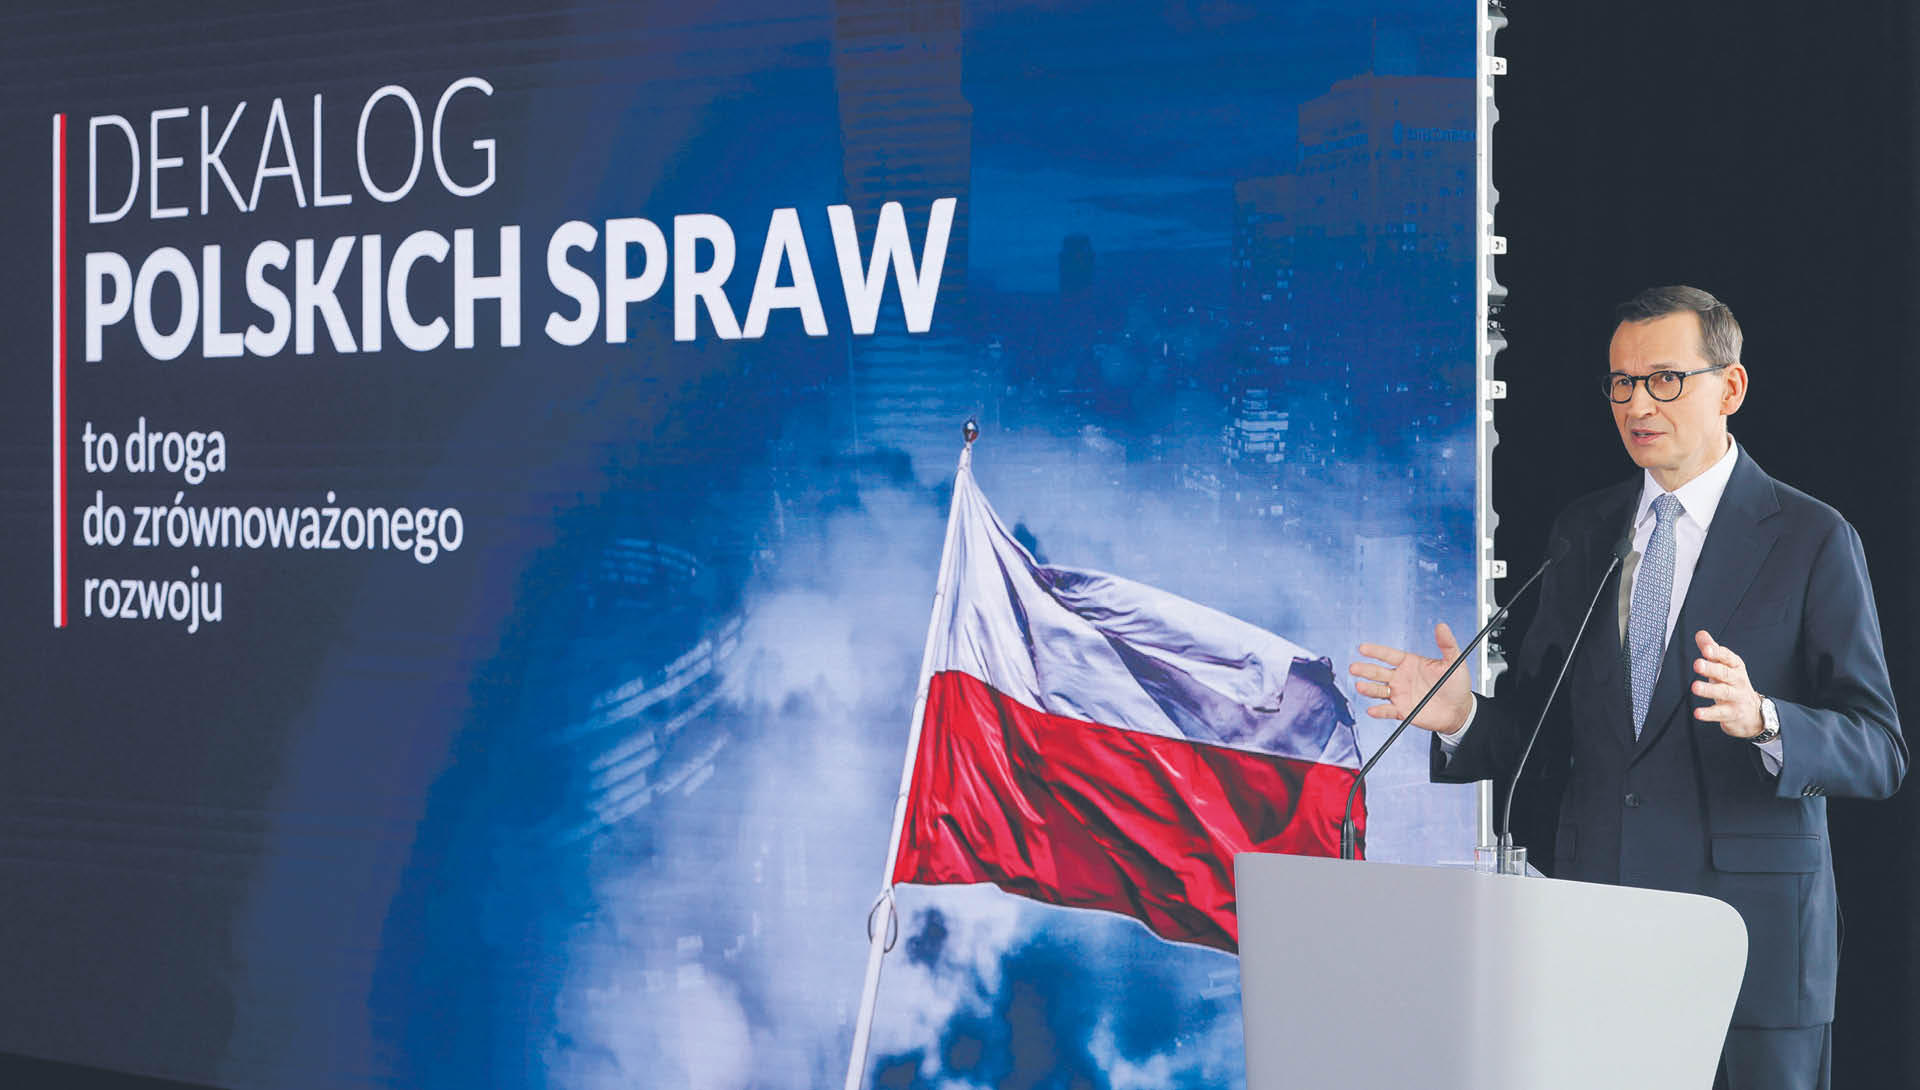 Dekalog Polskich Spraw to nie program PiS, lecz oferta zawierająca punkty programowe także innych partii – mówił Morawiecki, zachęcając do budowania ponadpartyjnej koalicji; oferta nie spotkała się z pozytywną odpowiedzią